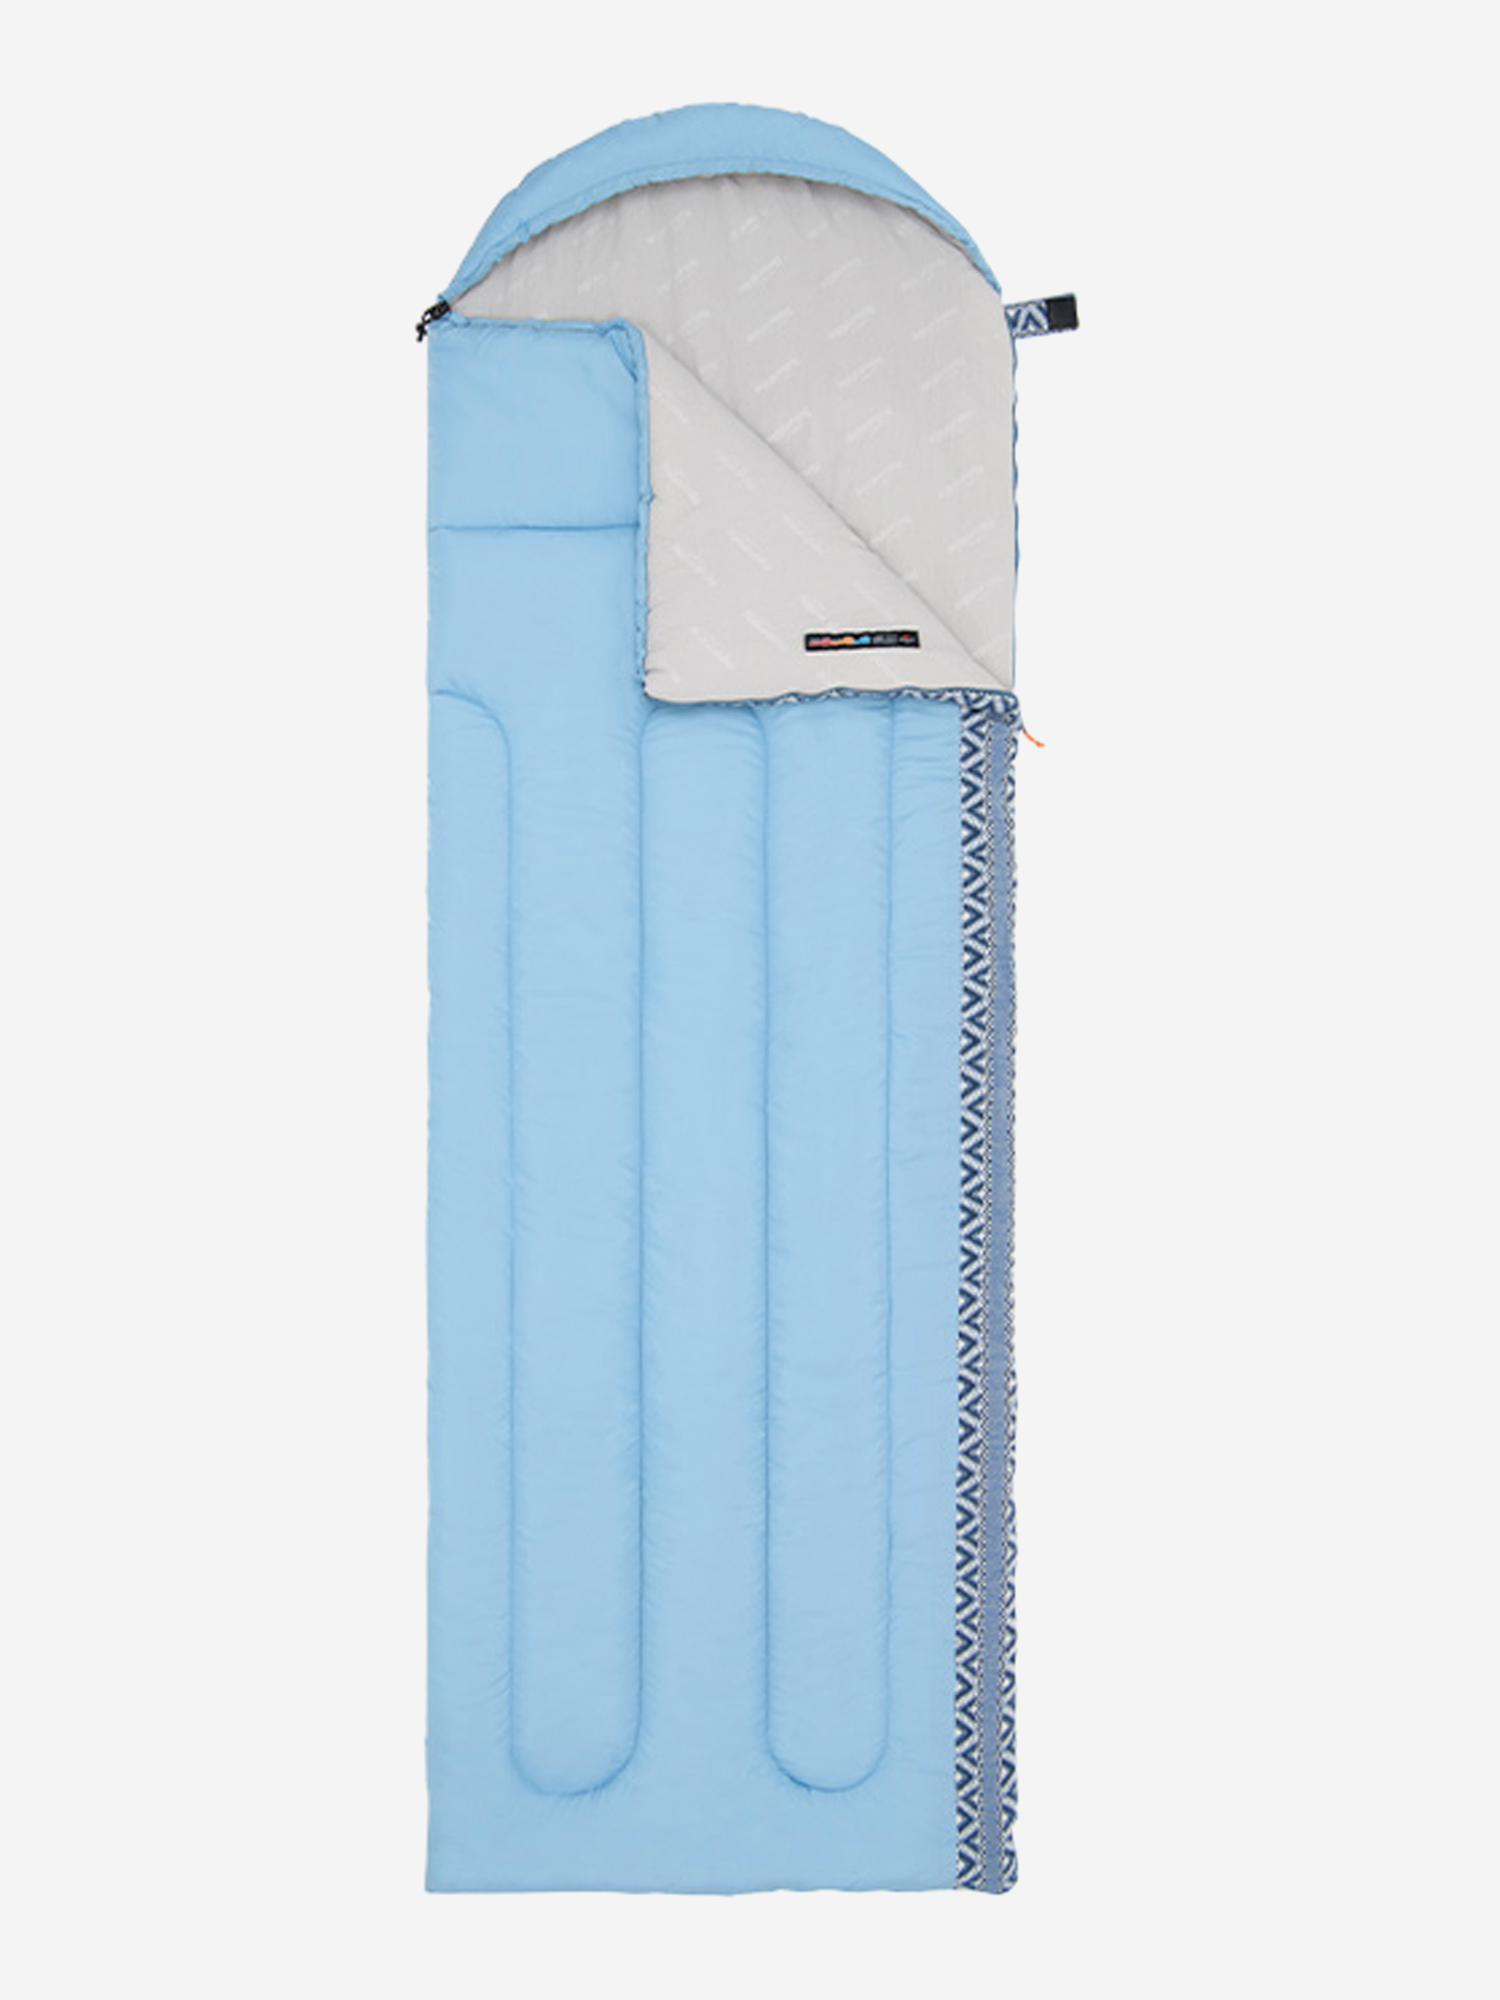 Мешок спальный Naturehike Envelope Down L350, (190+30)х75 см, (правый), (ТК: +3C), голубой, Голубой мешок спальный naturehike ultralight cw400 m 210х75 см правый тк 5c